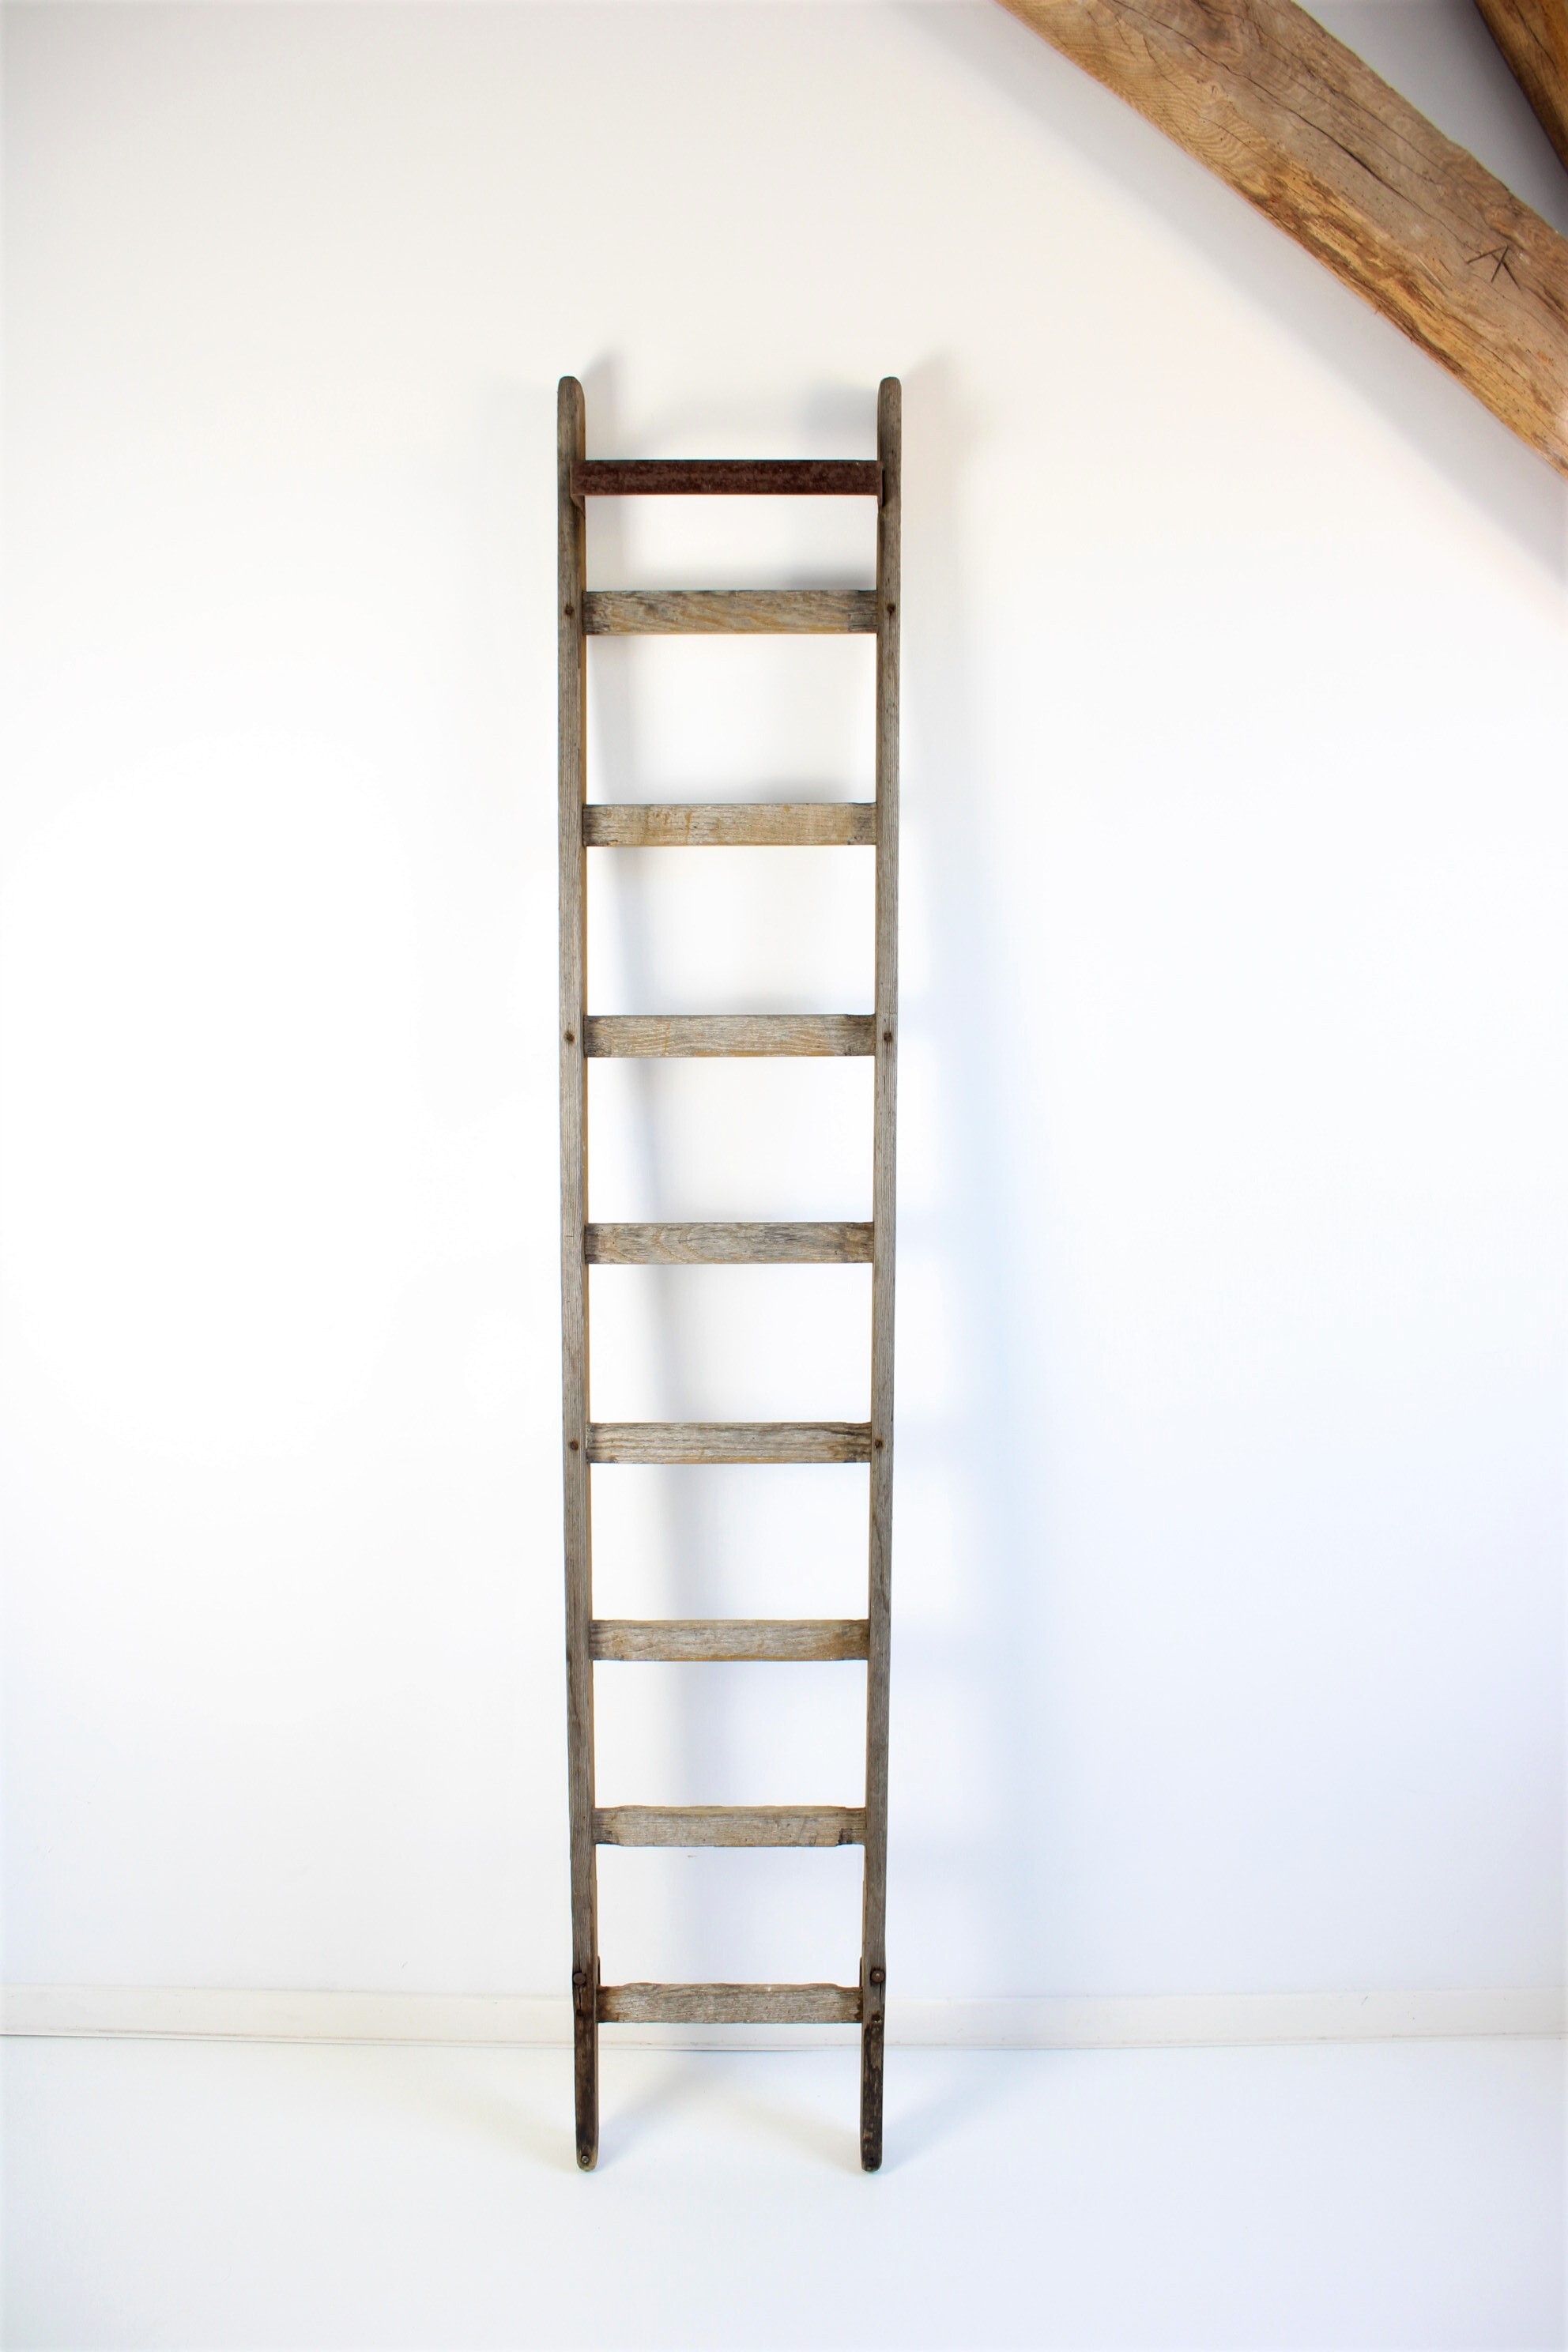 Factuur Verlammen minstens oude smalle houten ladder · Het huis van mijn moeder